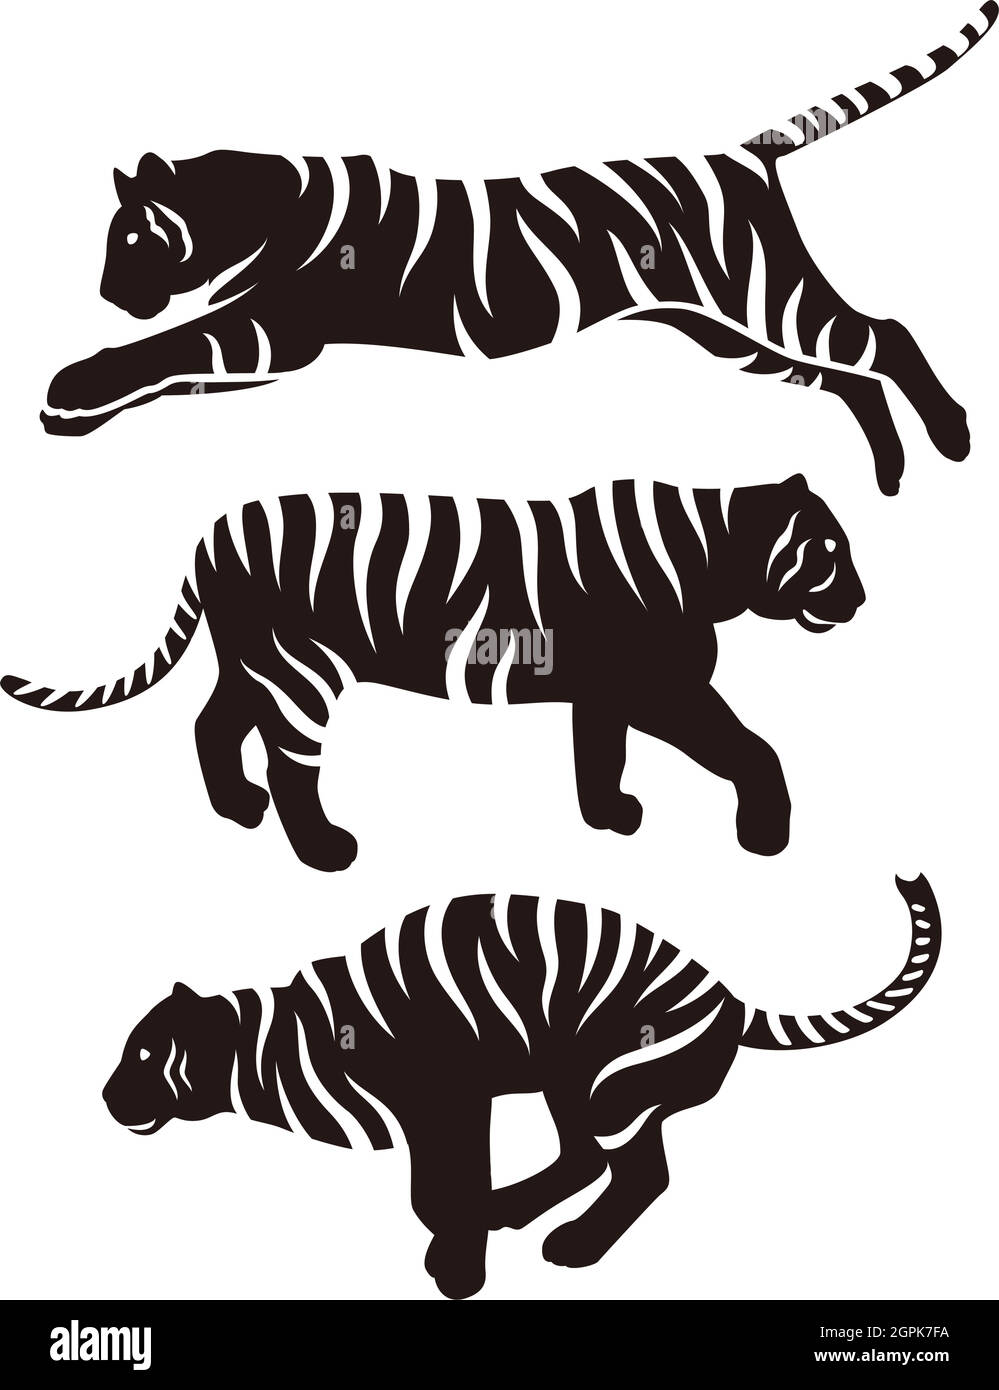 Tiger Silhouette Illustrationsset Stock Vektor